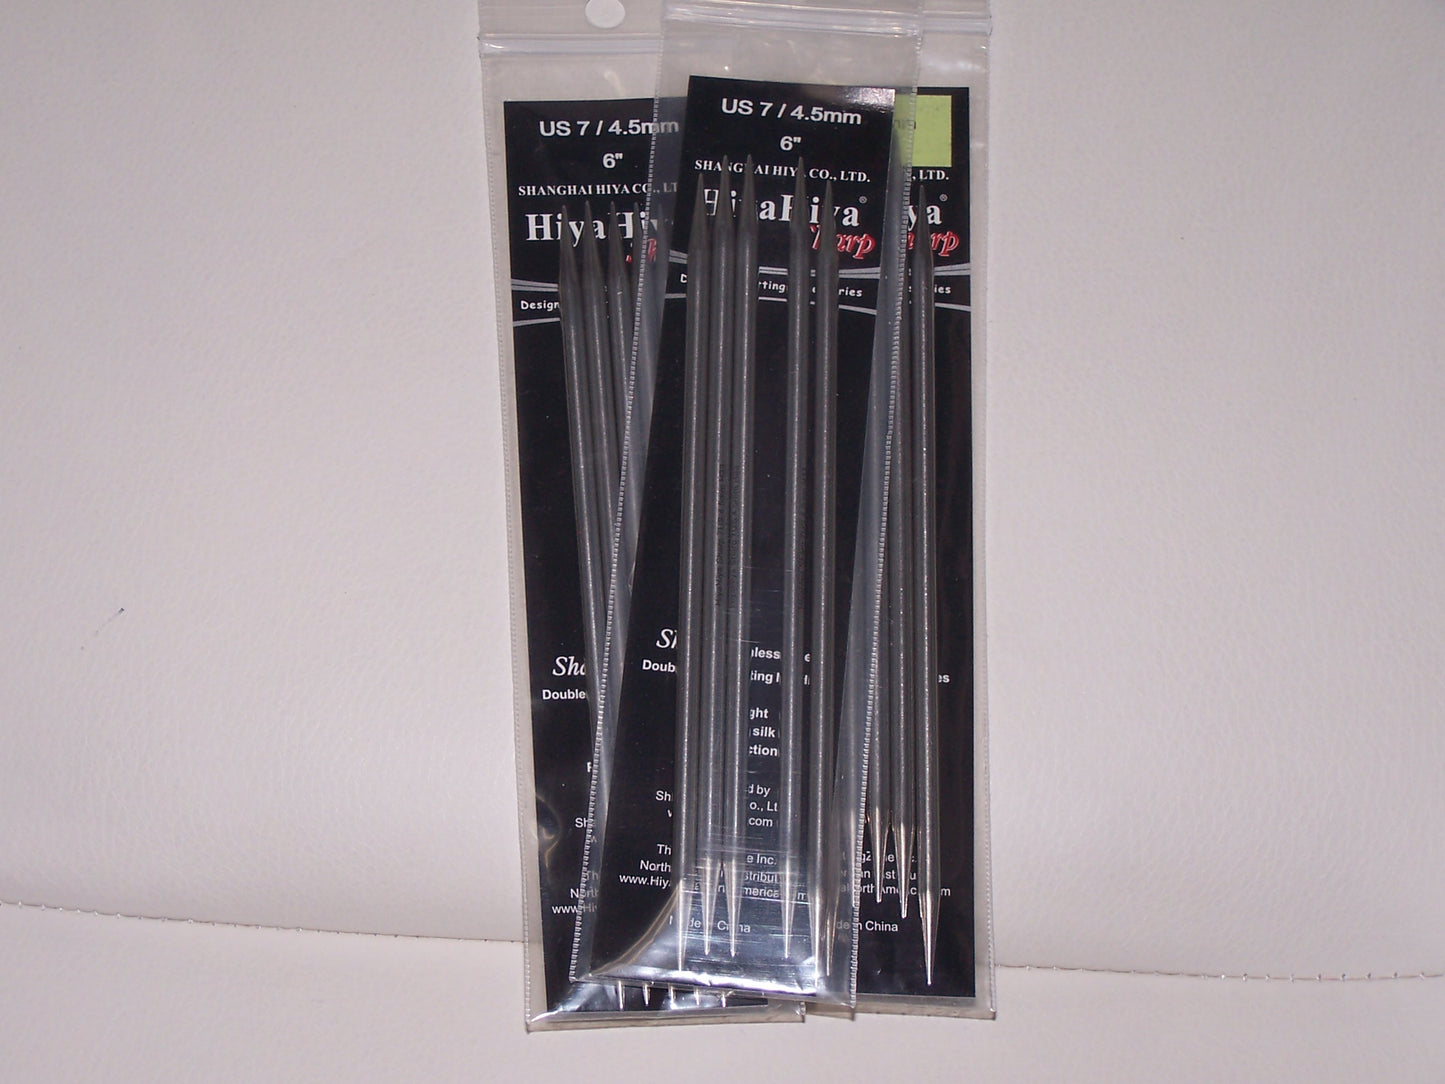 Hiya Hiya Sharp US 7 (4.5mm) size 6 inch DPN's